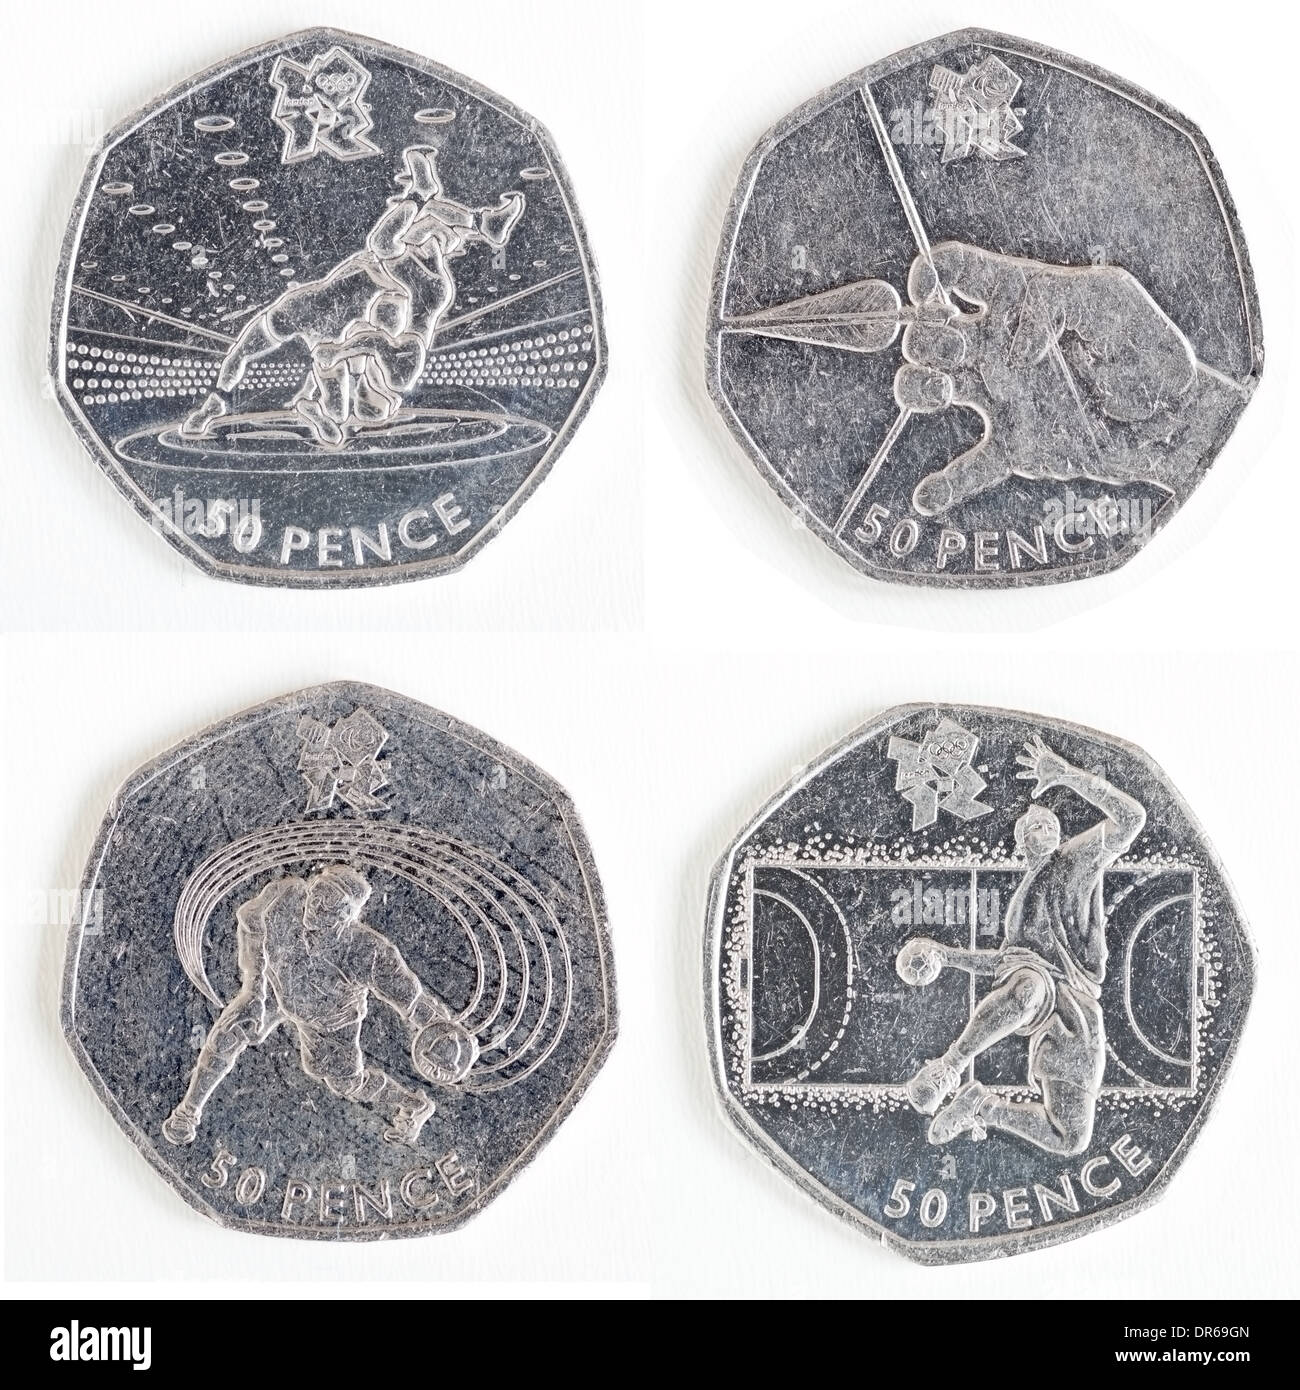 Colección de Juegos Olímpicos de Londres 50 peniques monedas conmemorativas, reverso Foto de stock